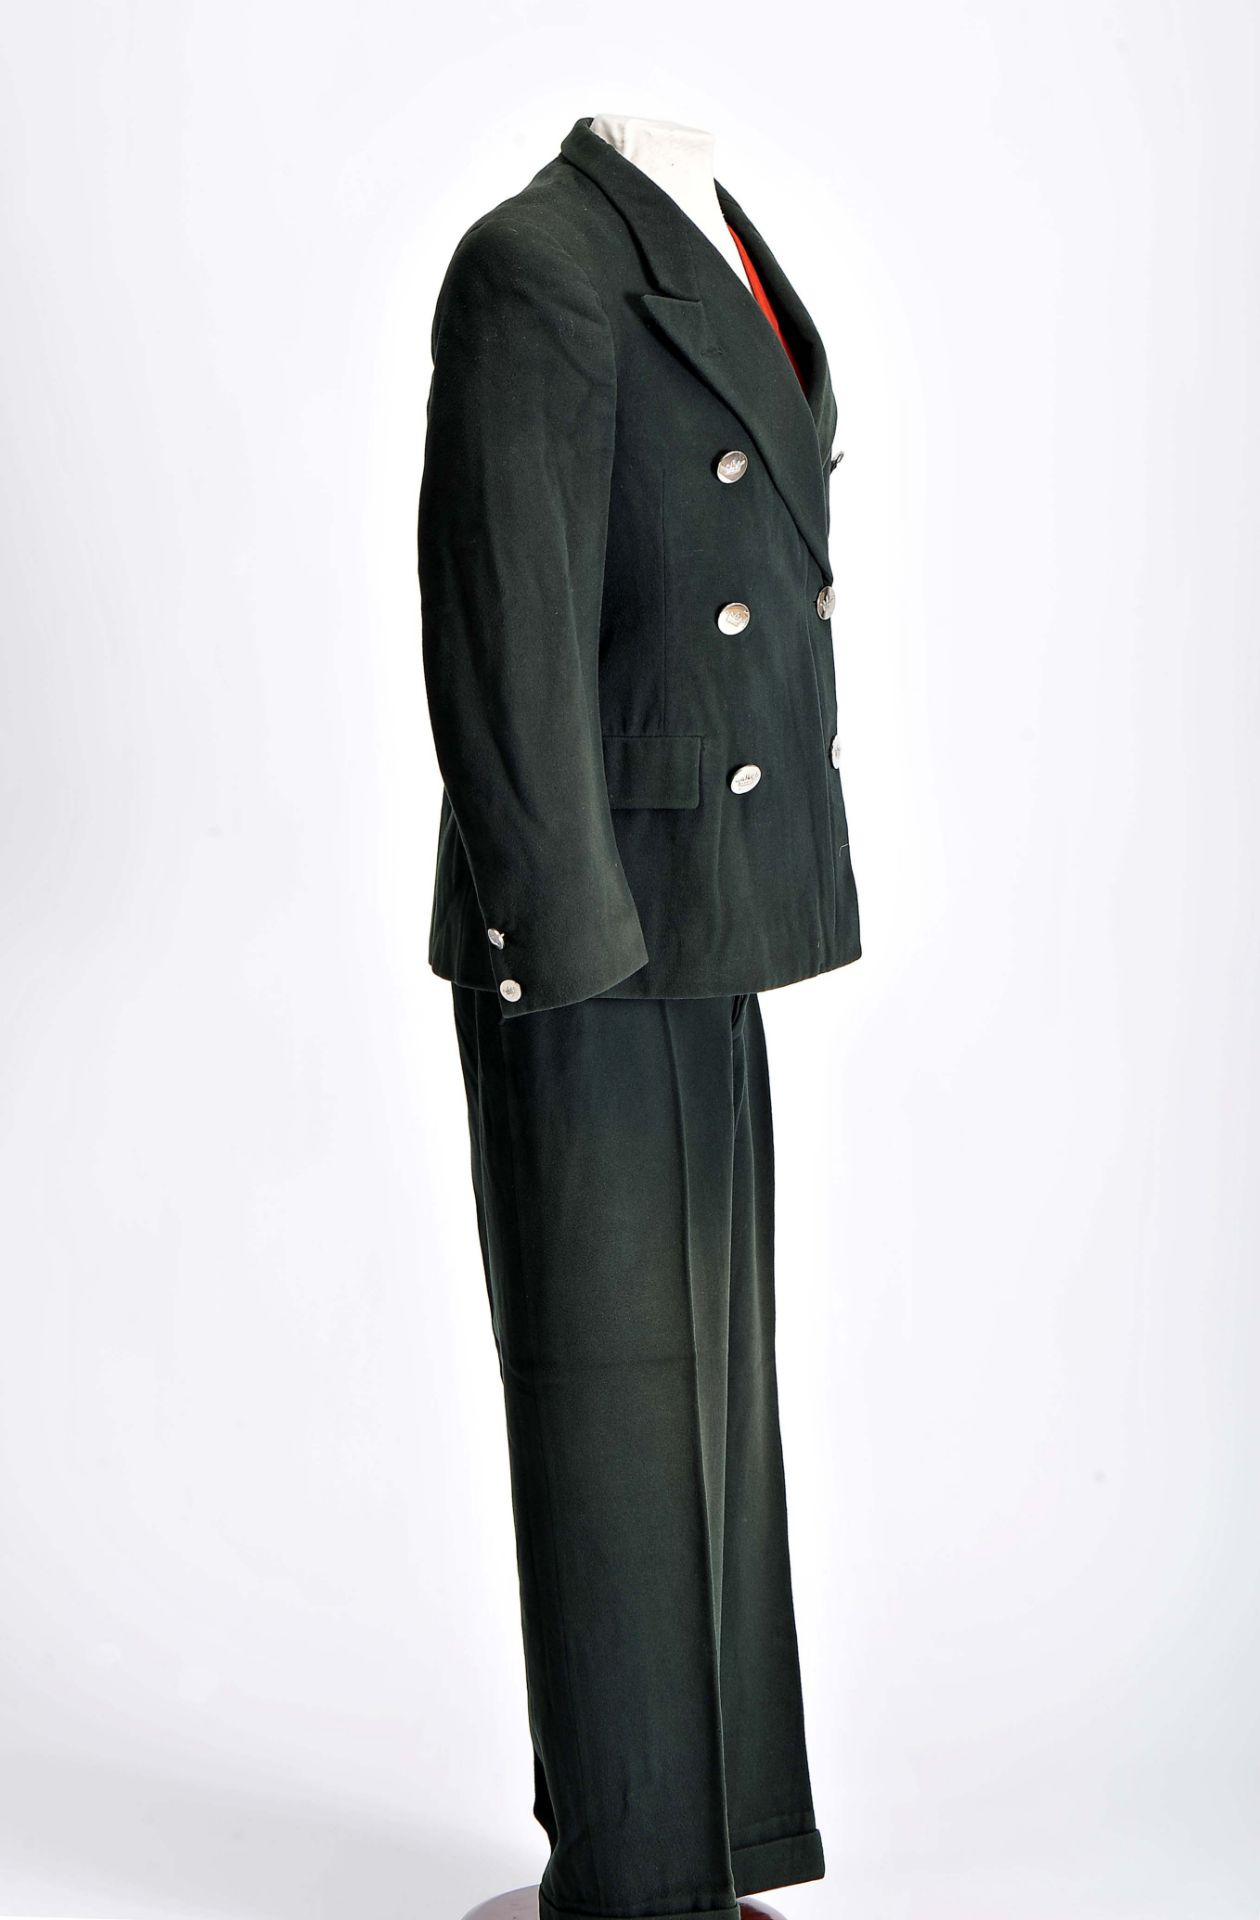 A full chauffer uniform - Image 3 of 6